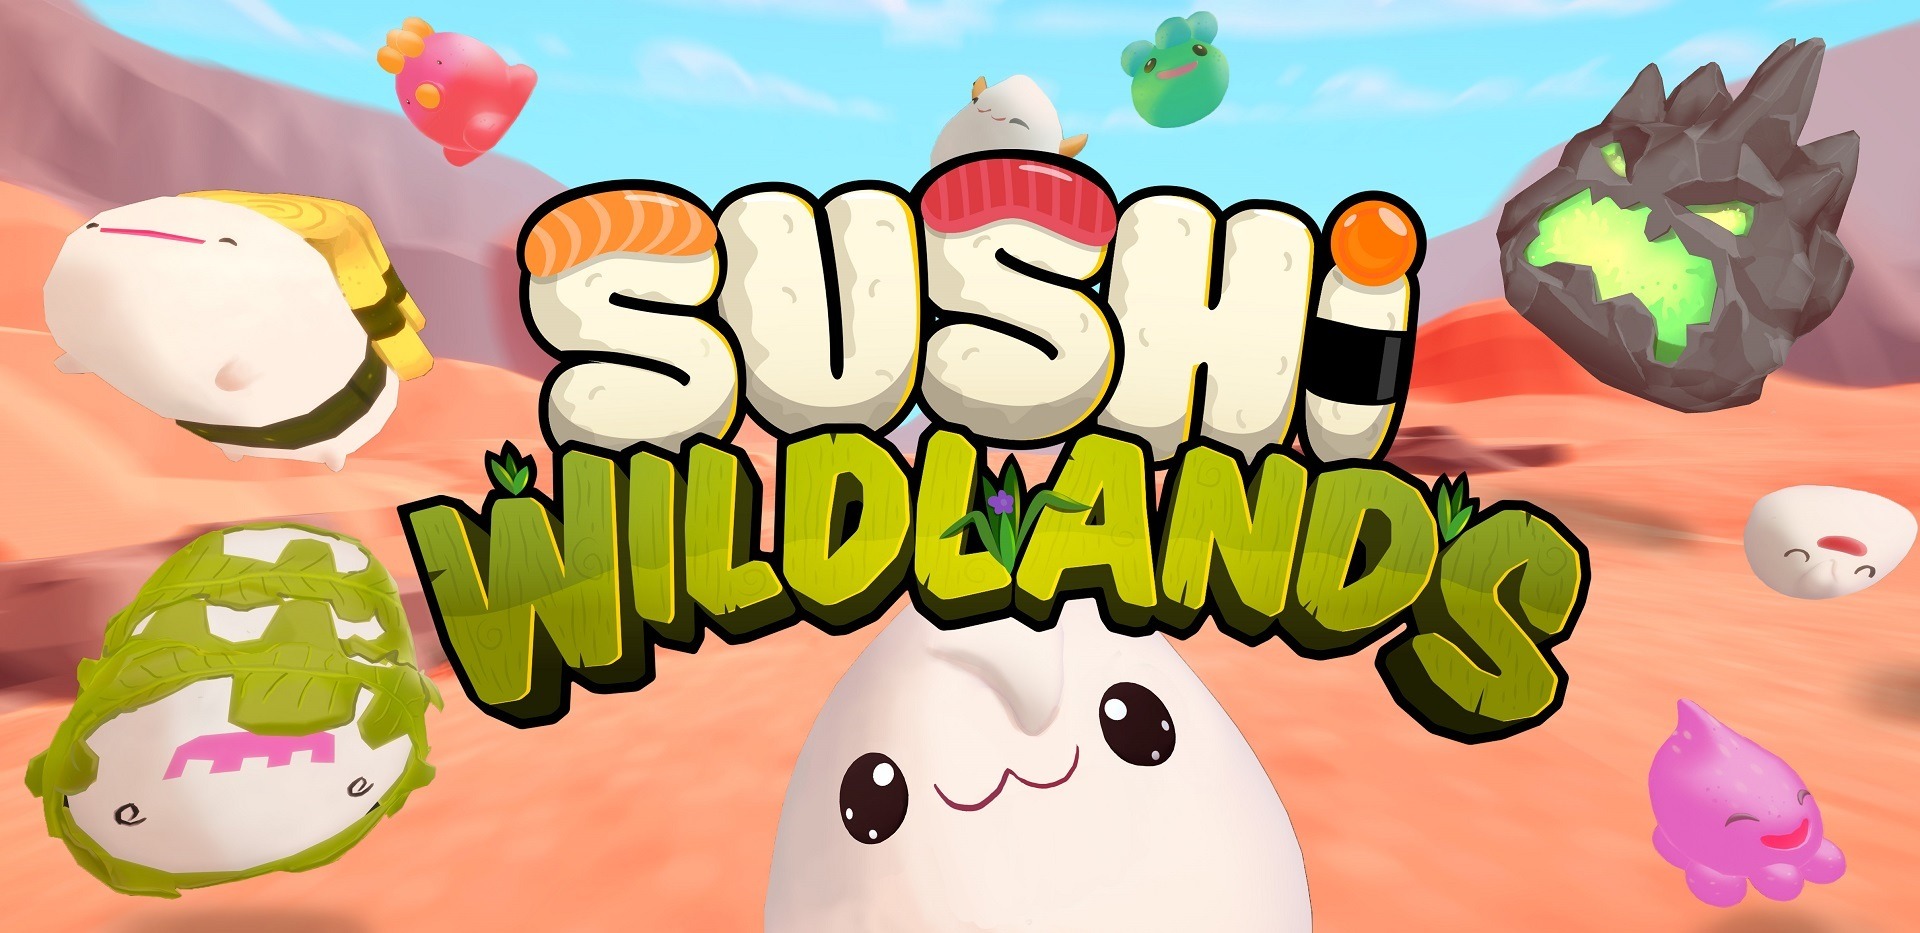 寿司ネタを捕獲して育てる オープンワールドrpg Sushi Wildlands 発表 Sushimonってなんだ Game Spark 国内 海外ゲーム情報サイト